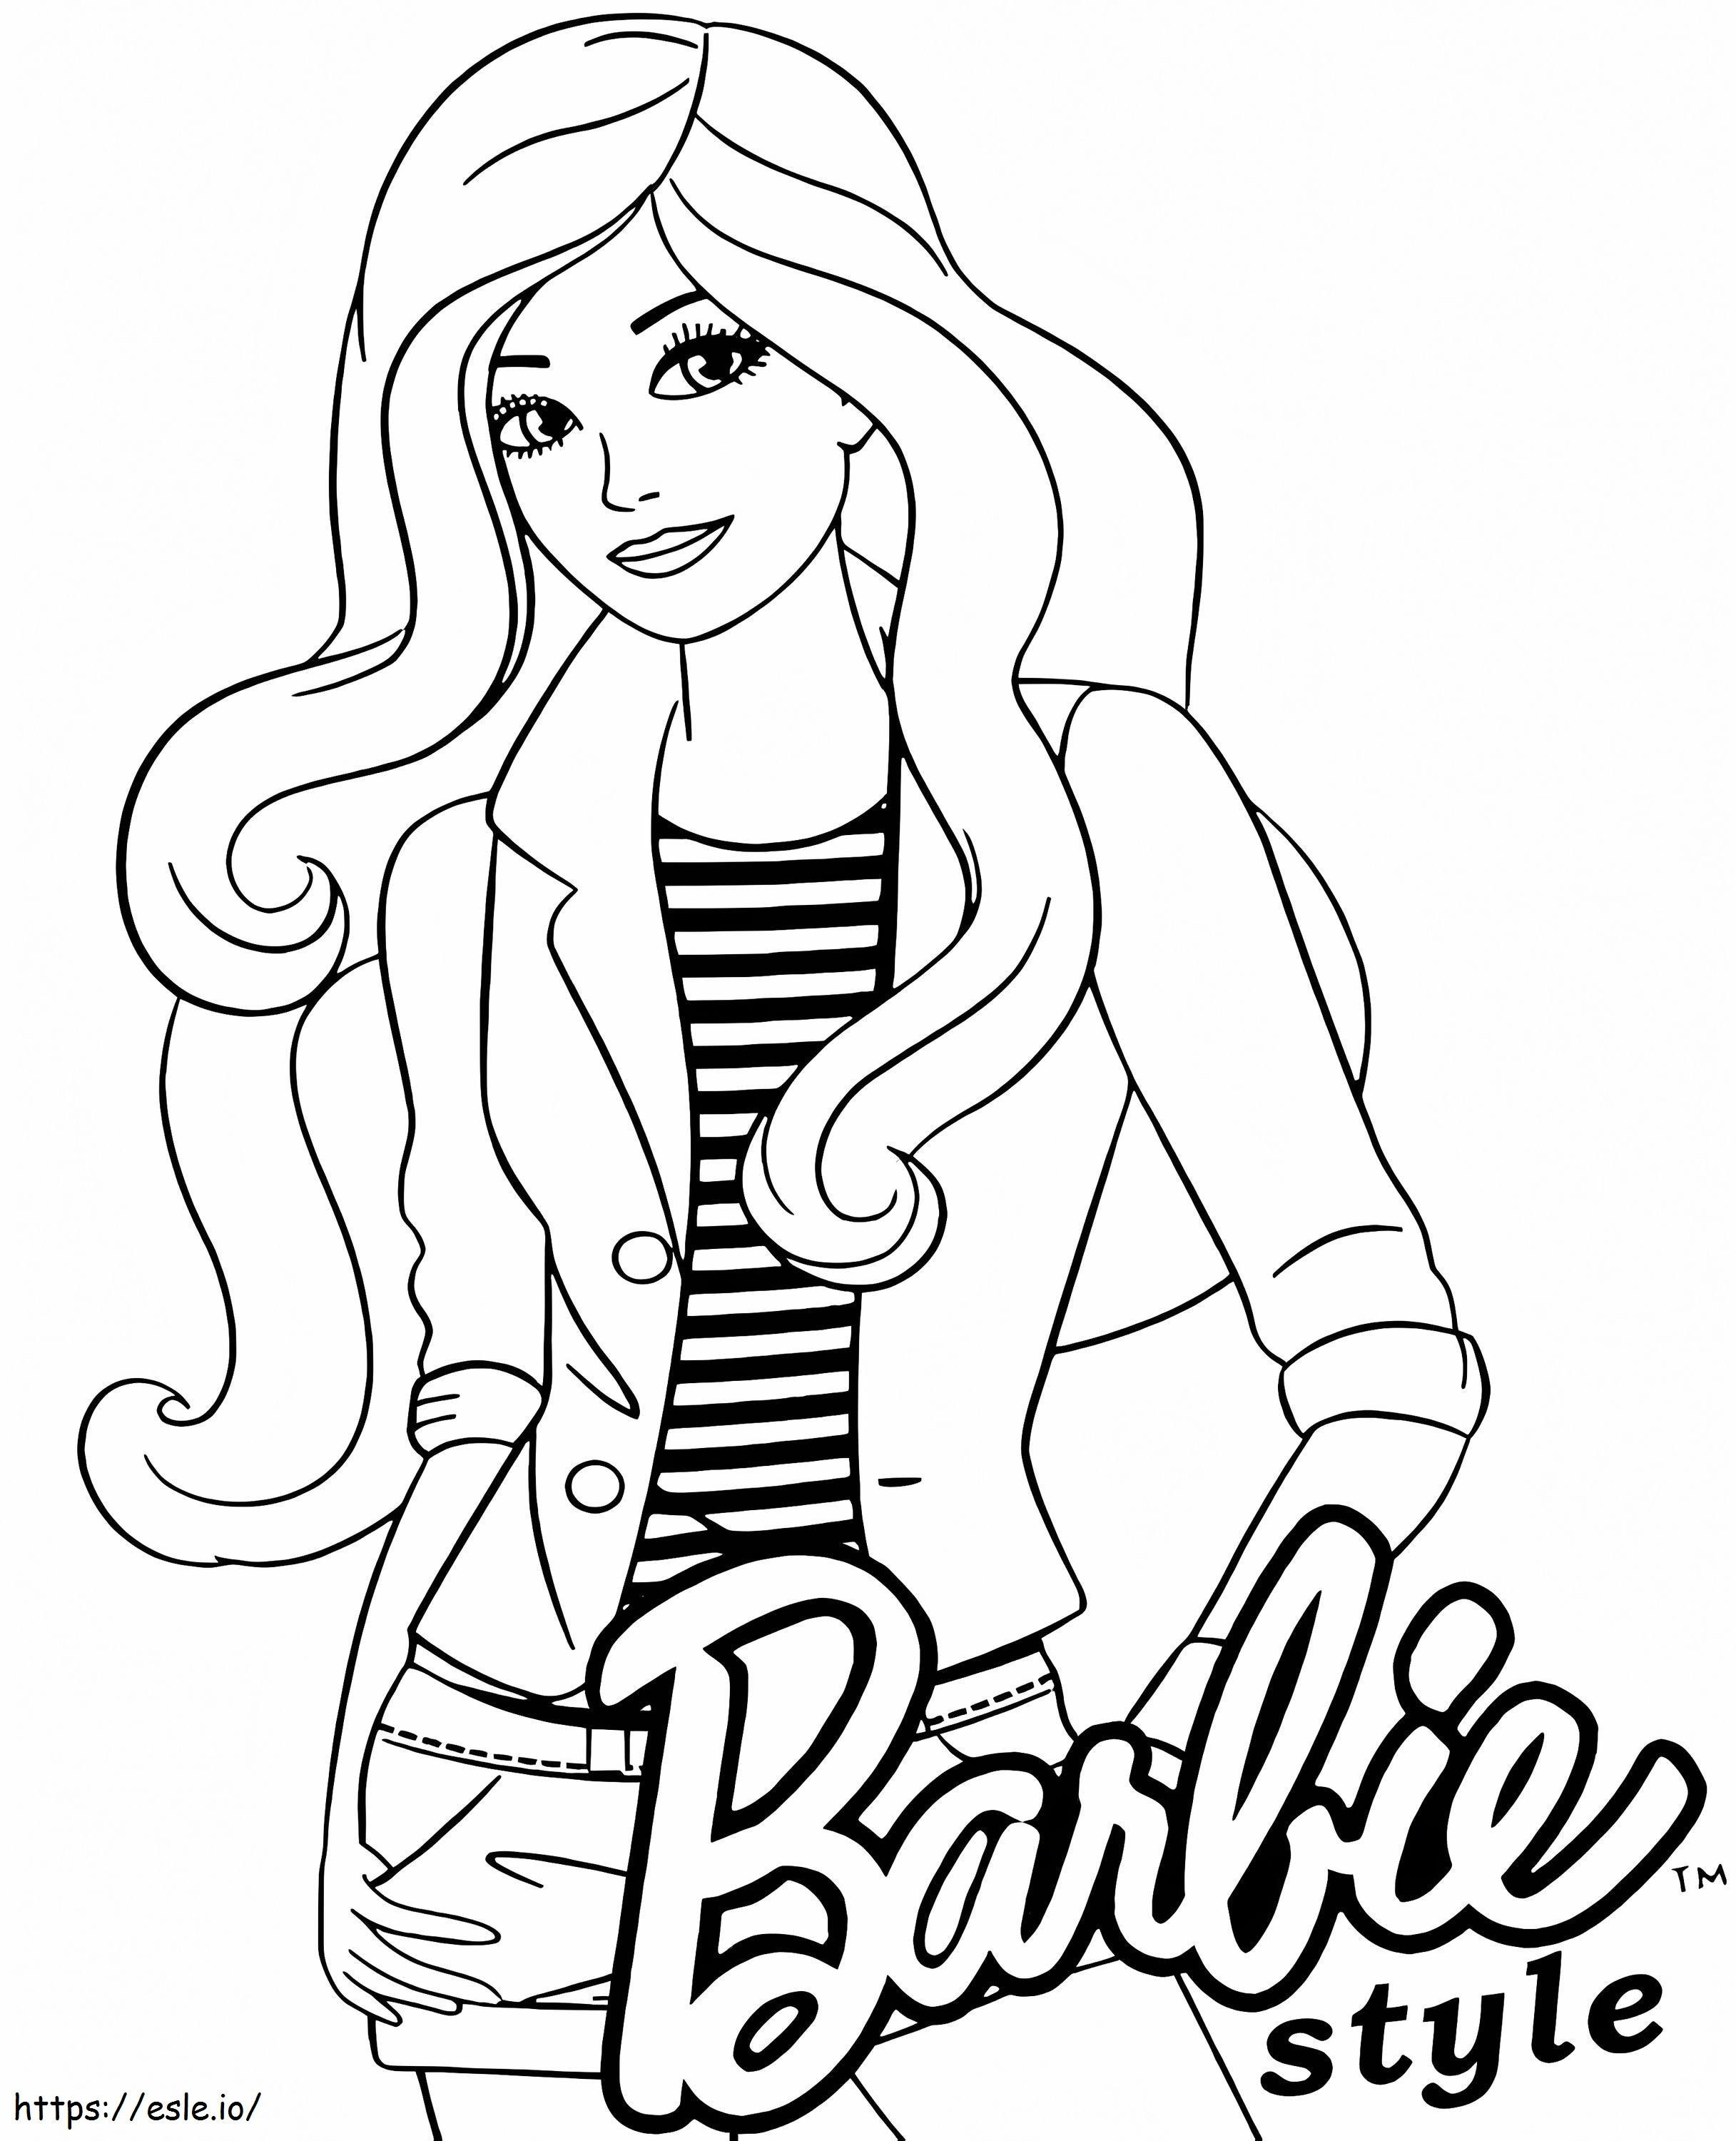 Styl Barbie kolorowanka